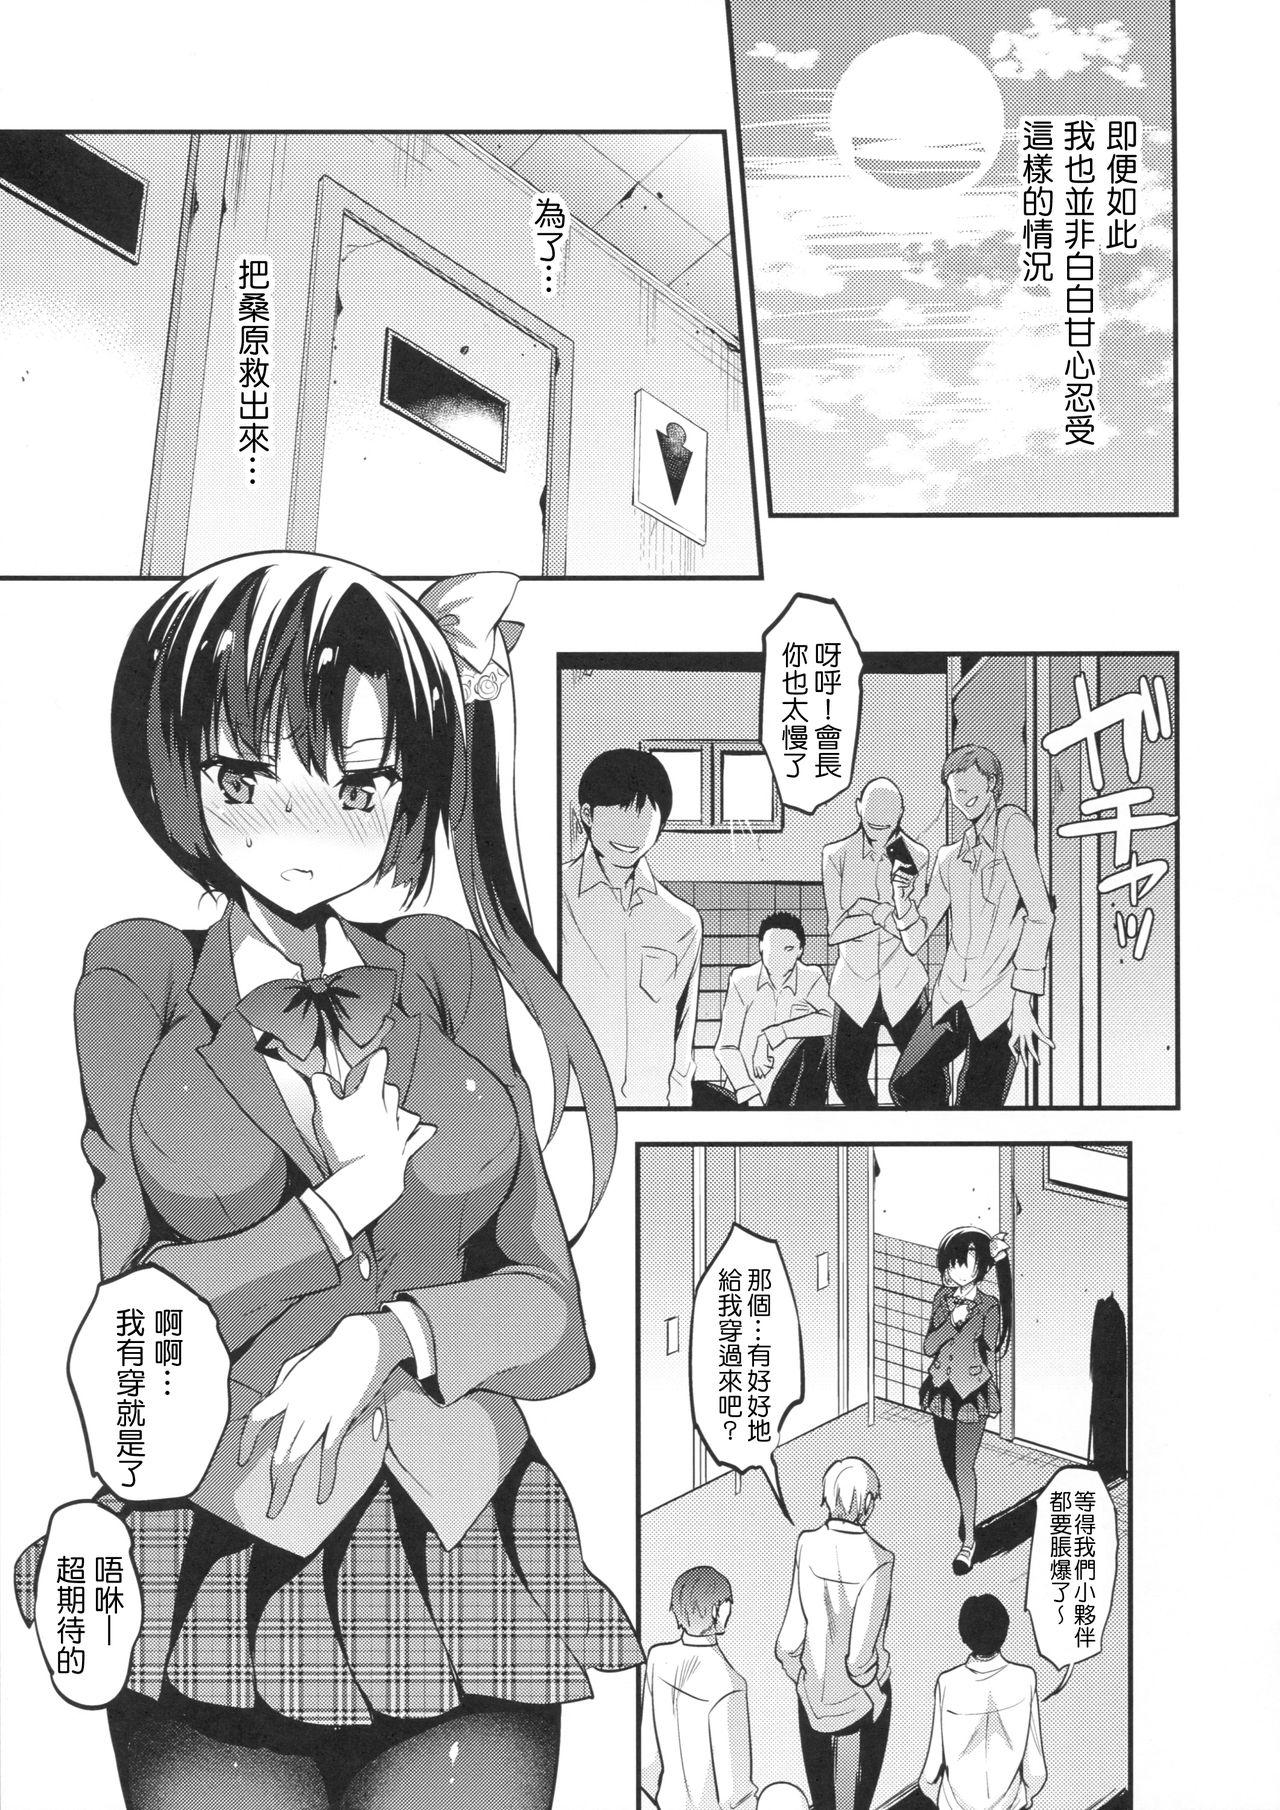 Hardcore Gakkou de Seishun! 14 - Original 8teenxxx - Page 6